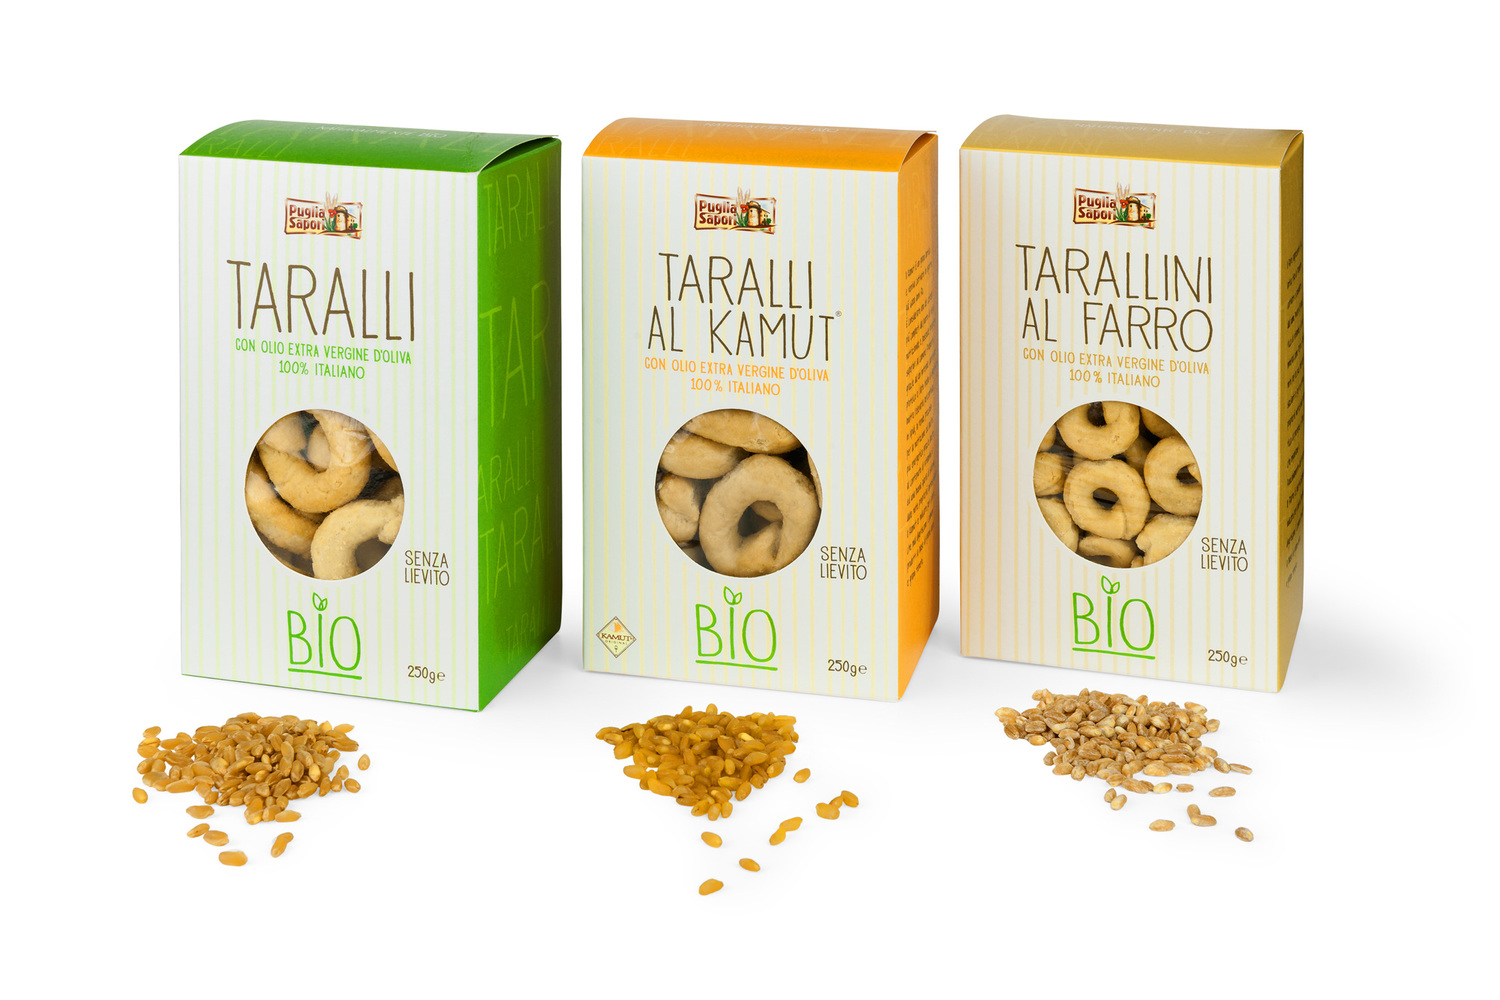 Puglia Sapori presenta il tarallo biologico sui mercati internazionali